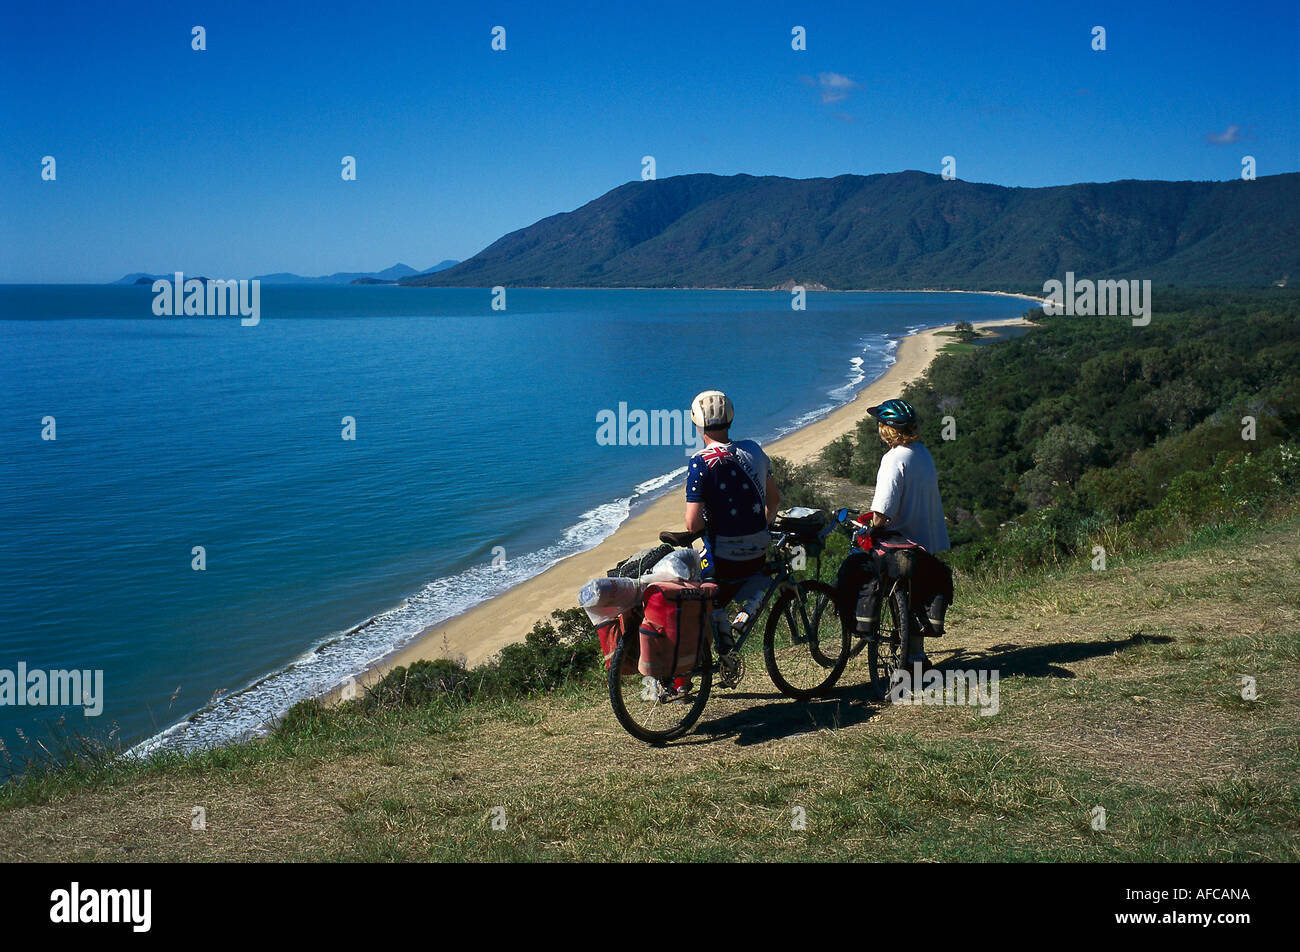 Les cyclistes aux Rex Lookout, près de Cairns, Queensland Australie Banque D'Images